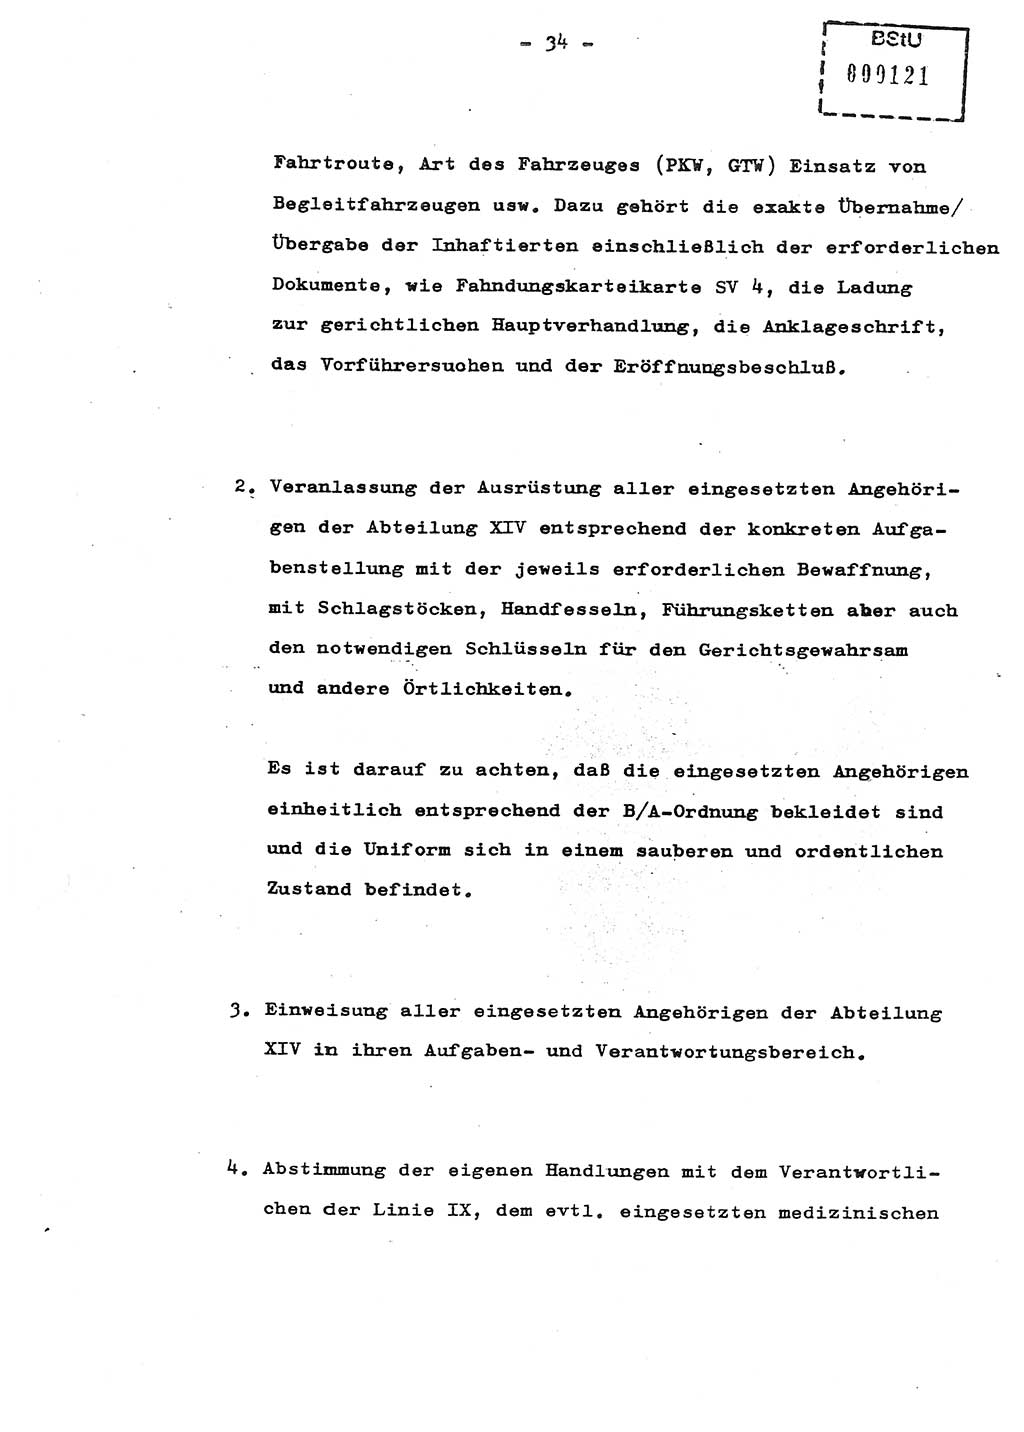 Schulungsmaterial Exemplar-Nr.: 8, Ministerium für Staatssicherheit [Deutsche Demokratische Republik (DDR)], Abteilung (Abt.) ⅩⅣ, Berlin 1987, Seite 34 (Sch.-Mat. Expl. 8 MfS DDR Abt. ⅩⅣ /87 1987, S. 34)